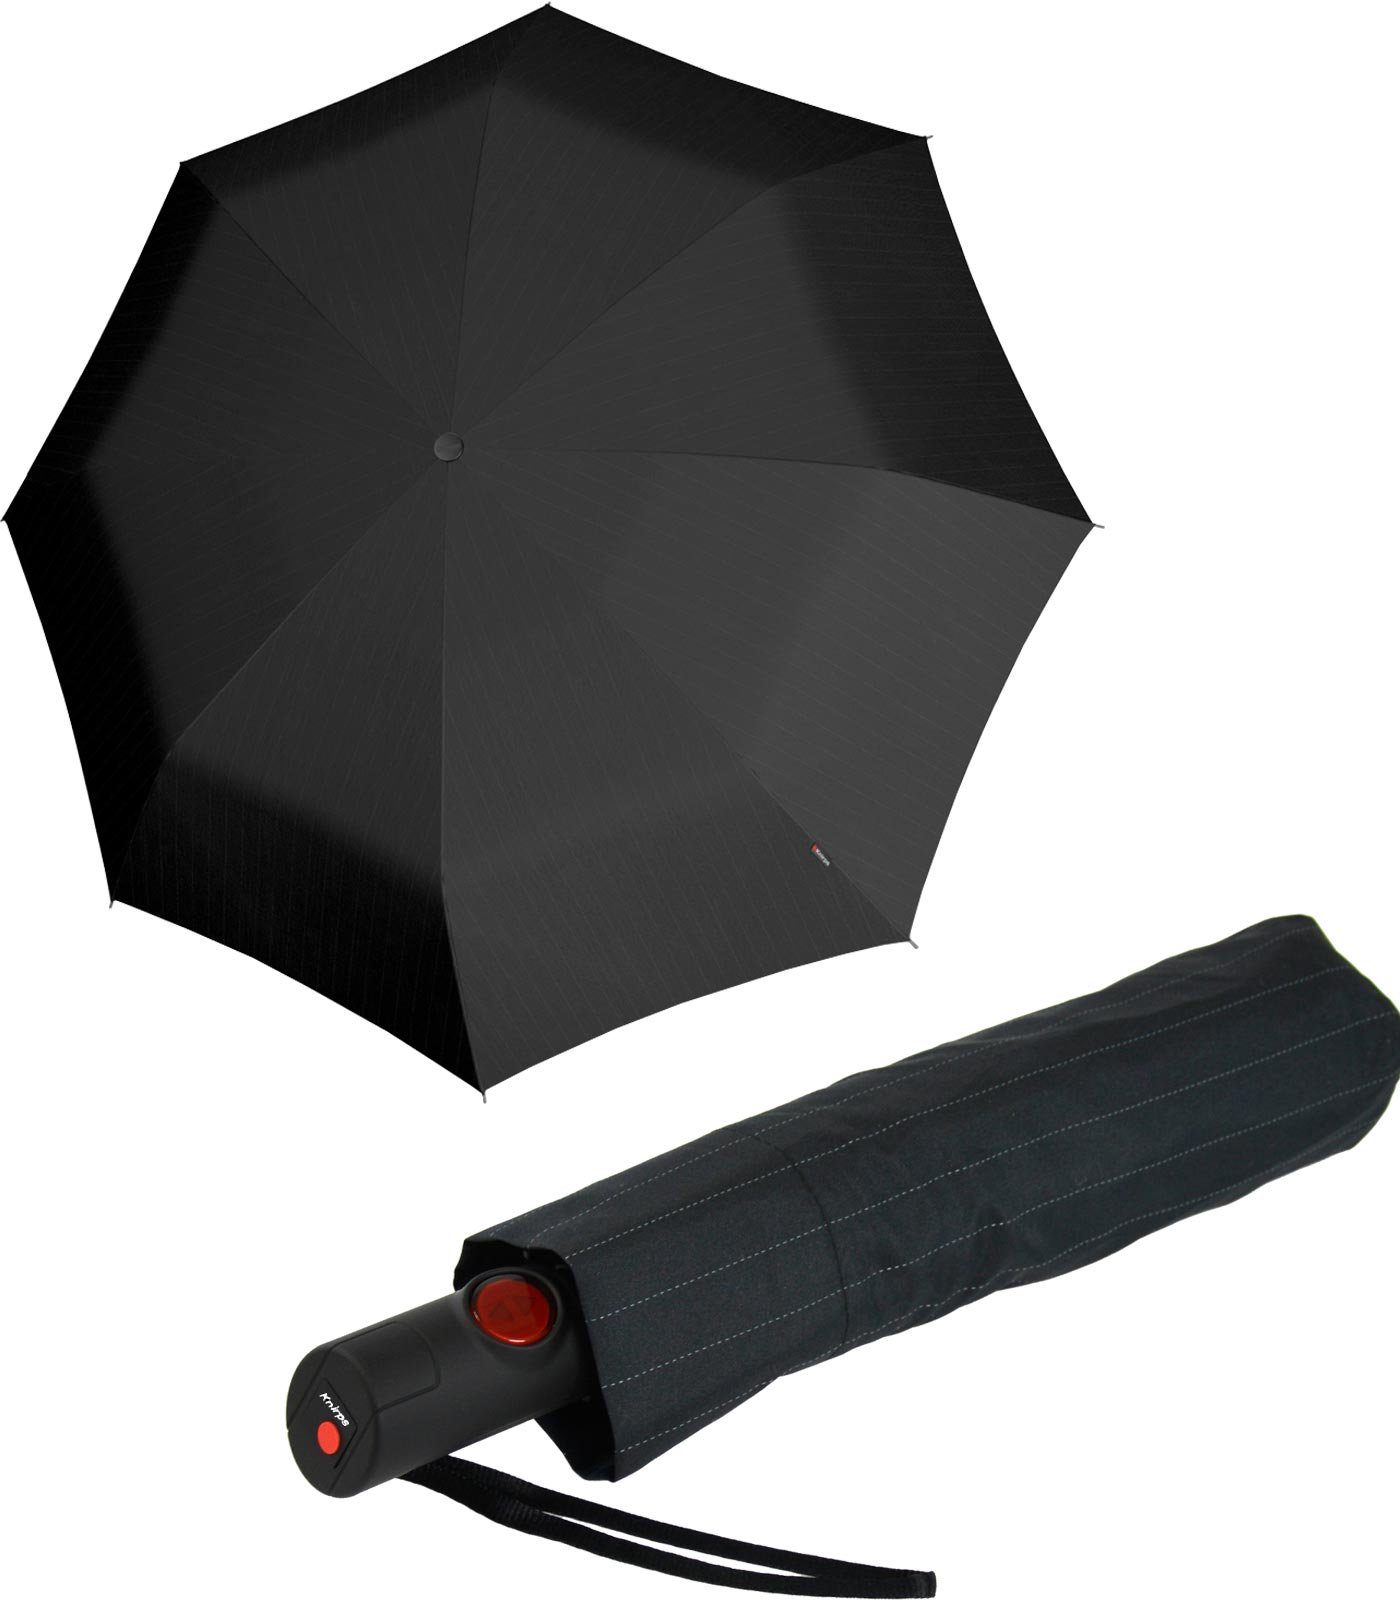 Knirps® Langregenschirm C.205 Duomatic Auf-Zu-Automatik pinstripe black, stabil und leicht